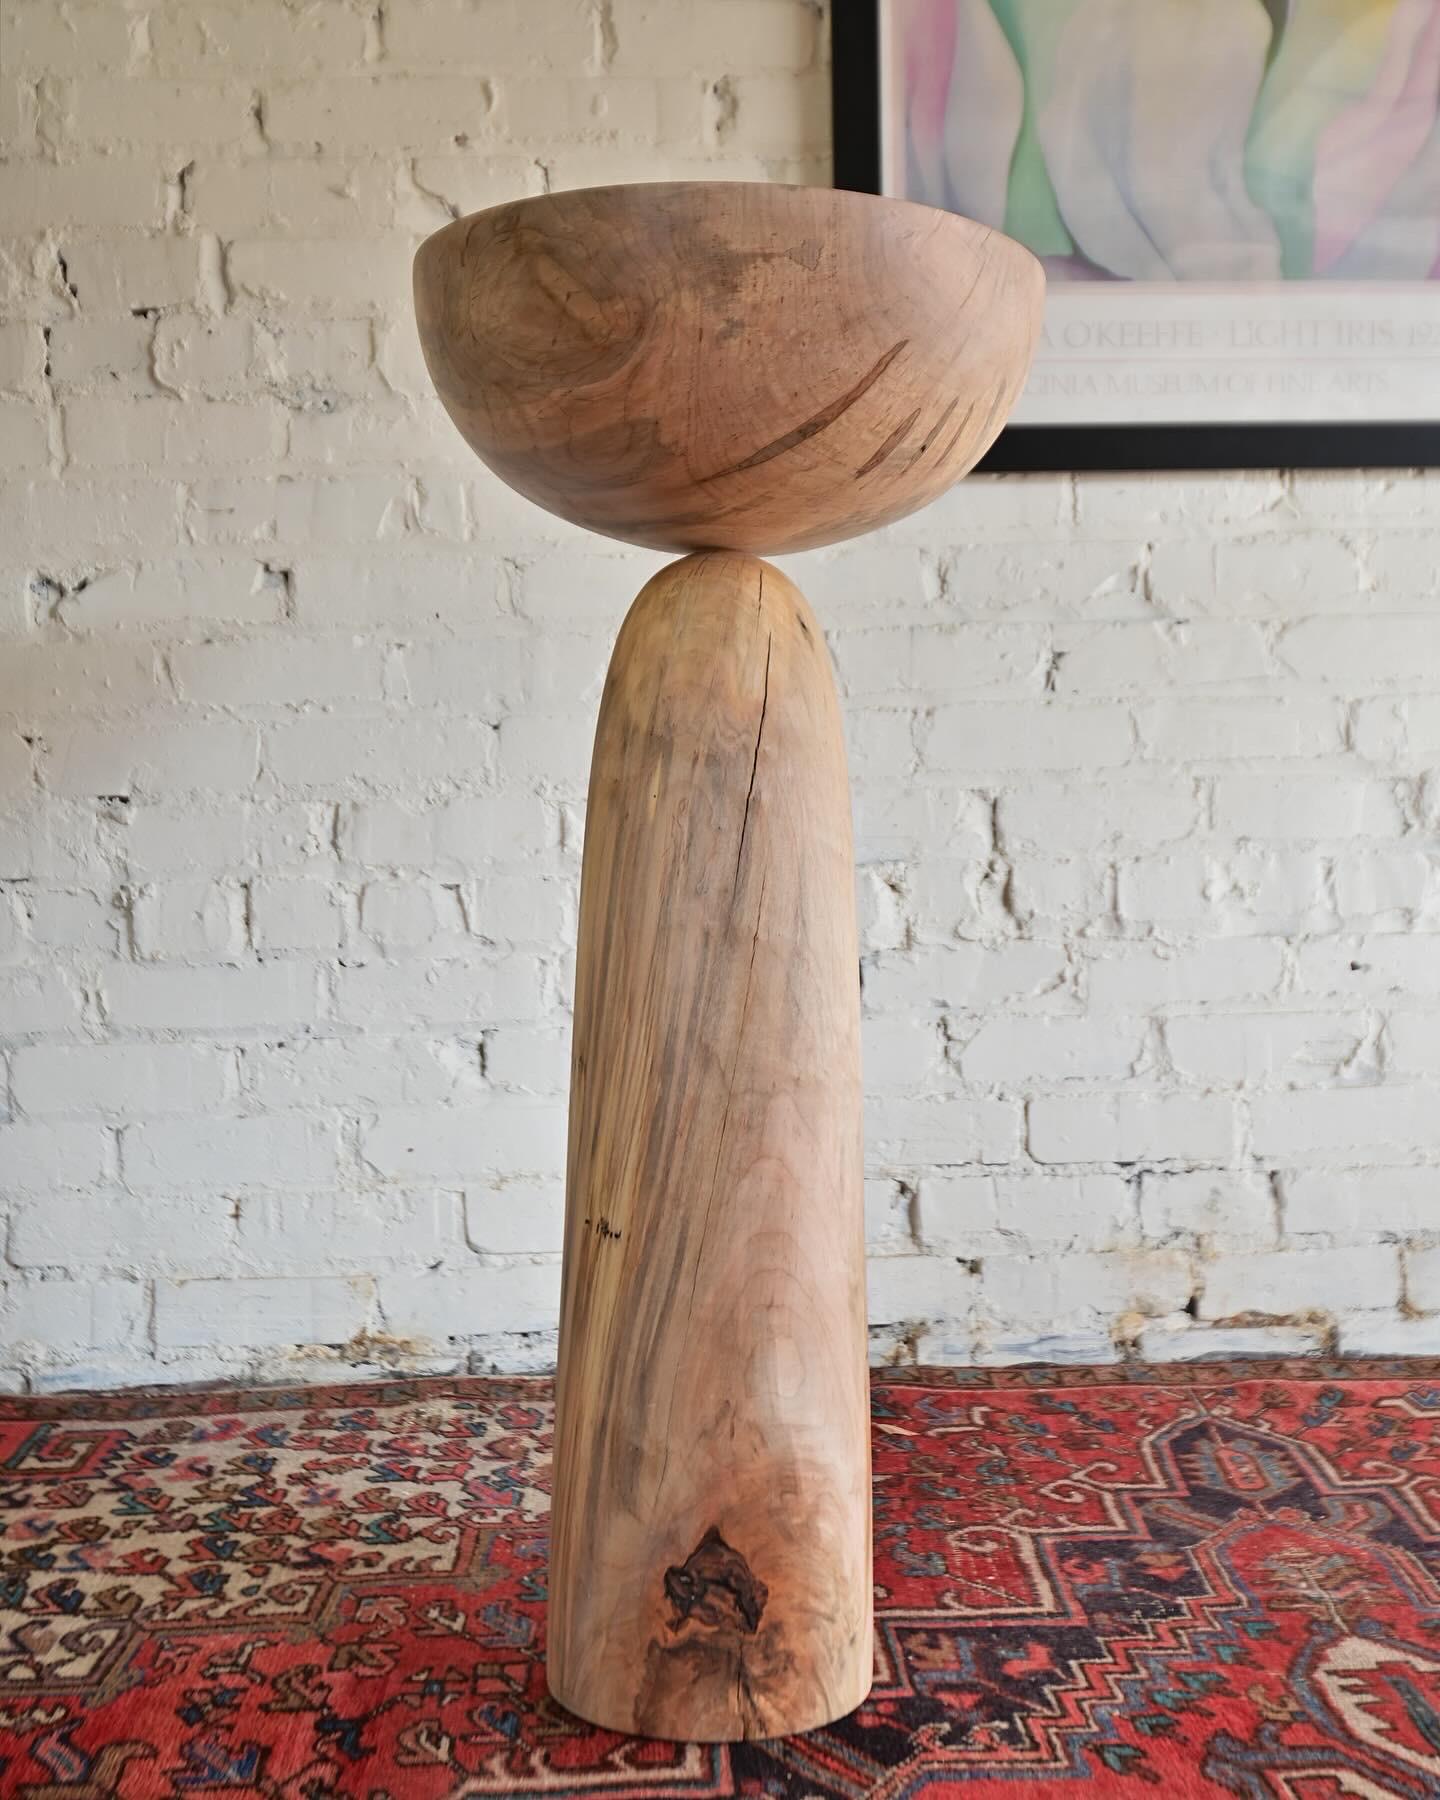 Turned Wooden Vessel Sculpture For Sale